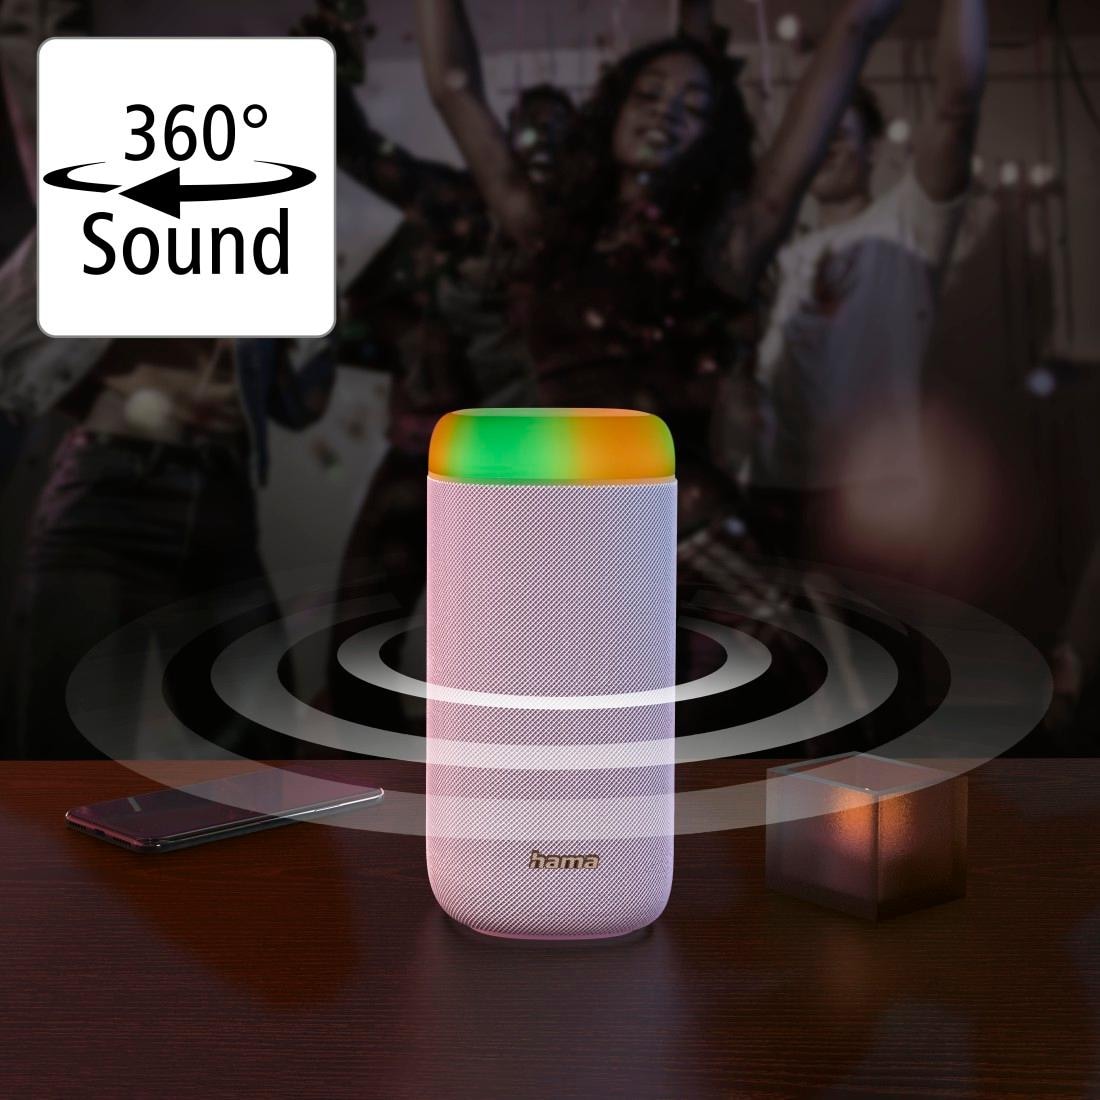 bei OTTO 2.0 kaufen Shine Box Hama Xtra Bass Bluetooth-Lautsprecher spritzwassergeschützt«, jetzt Bass-360ᵒ LED Freisprechanlage-Xtra Sound 360ᵒ Sound »Bluetooth